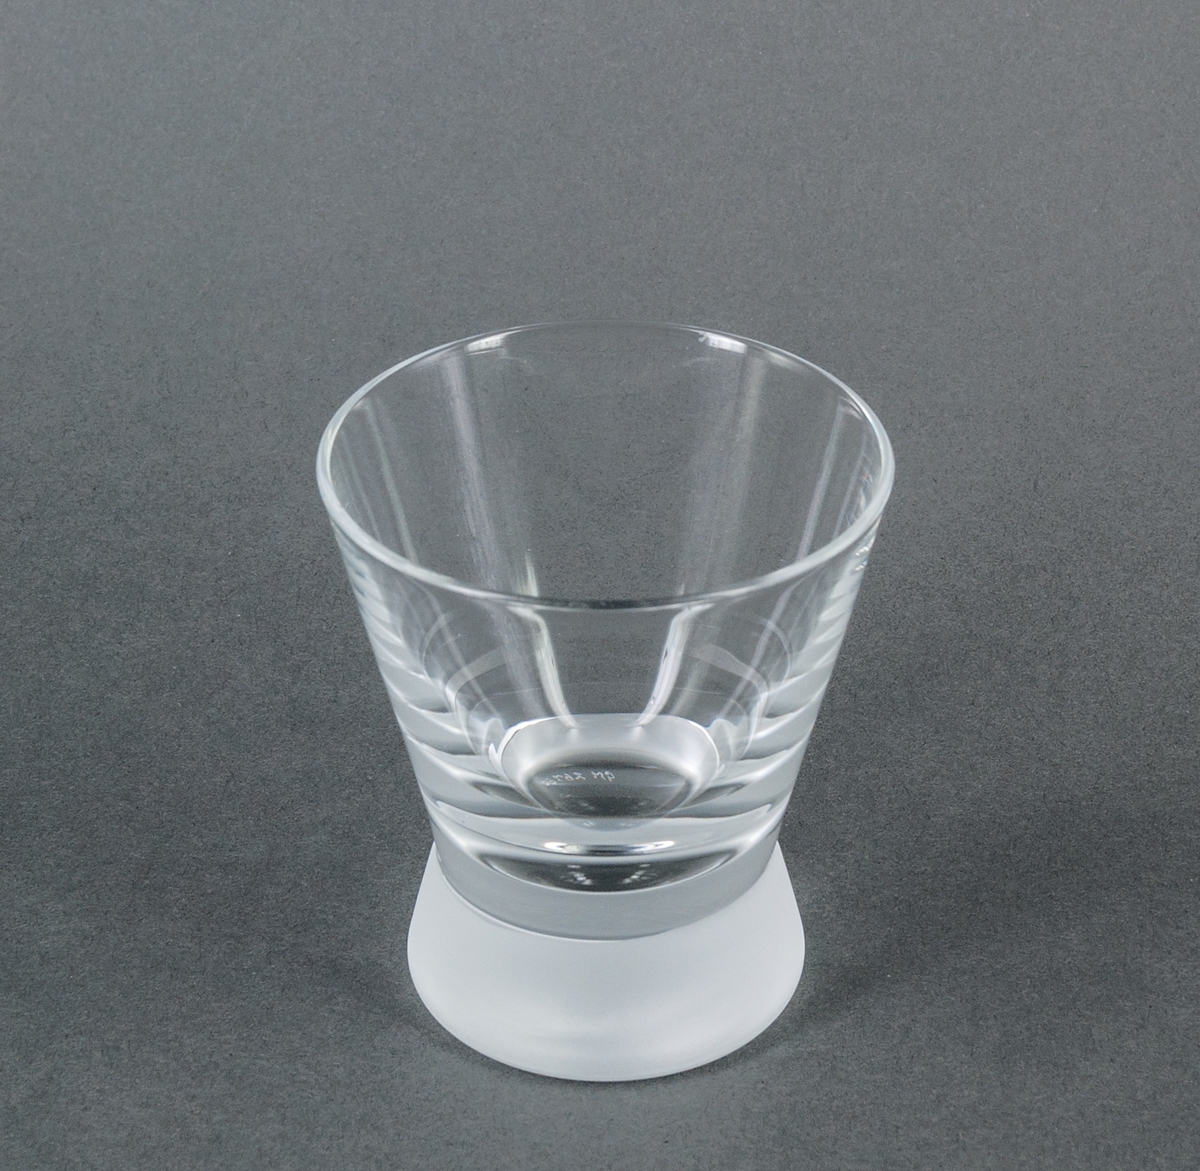 Cocktailglas (tumbler), prov till modell "Queen frostad". Ofärgat med tjock, frostad fot. Raka utåtlutande sidor. Design Gunnar Cyrén för Orrefors Glasbruk.